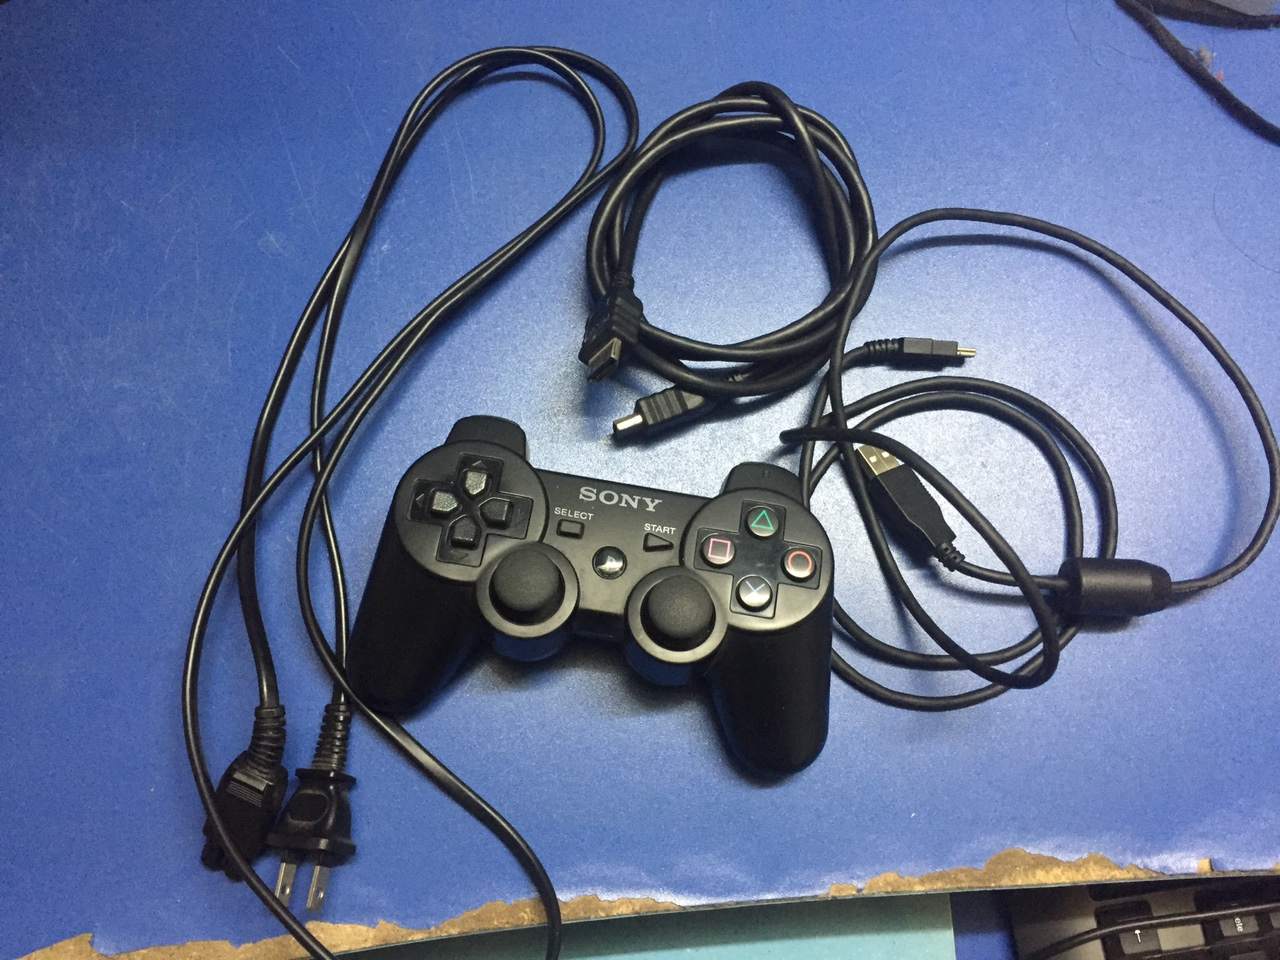 PlayStation 3 160gb (CECH-2500A) - 2.500.000đ | Nhật tảo